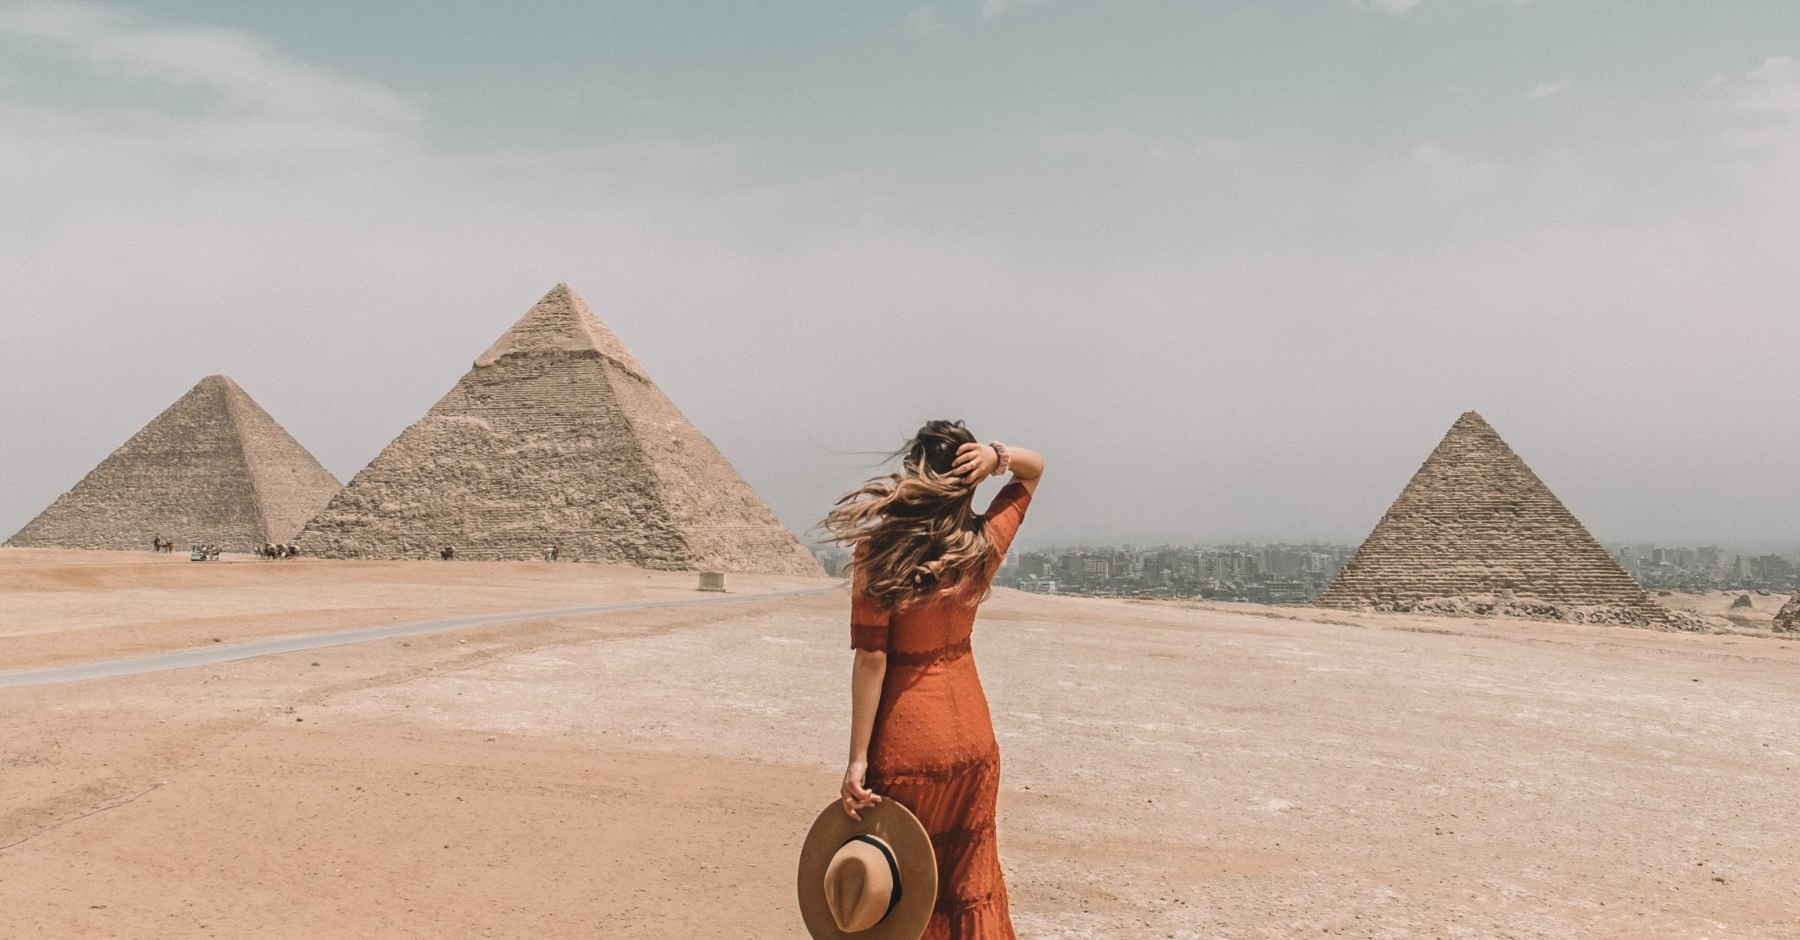 Ägypten 7 tage Reiseroute